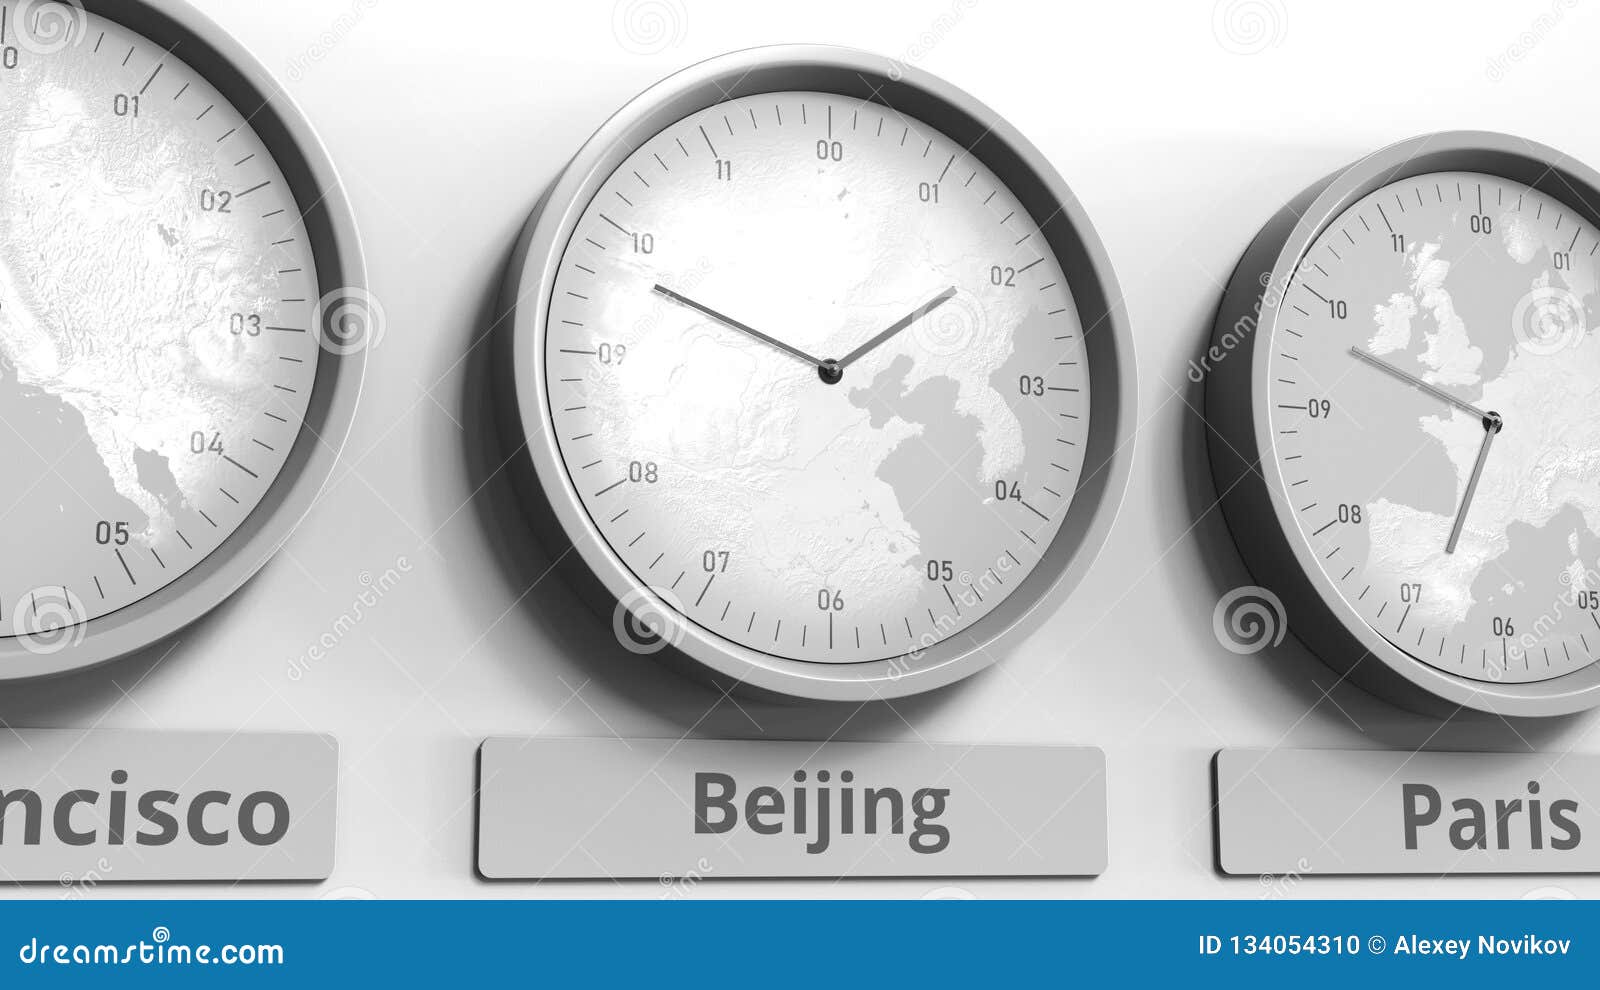 北京时间时钟显示图